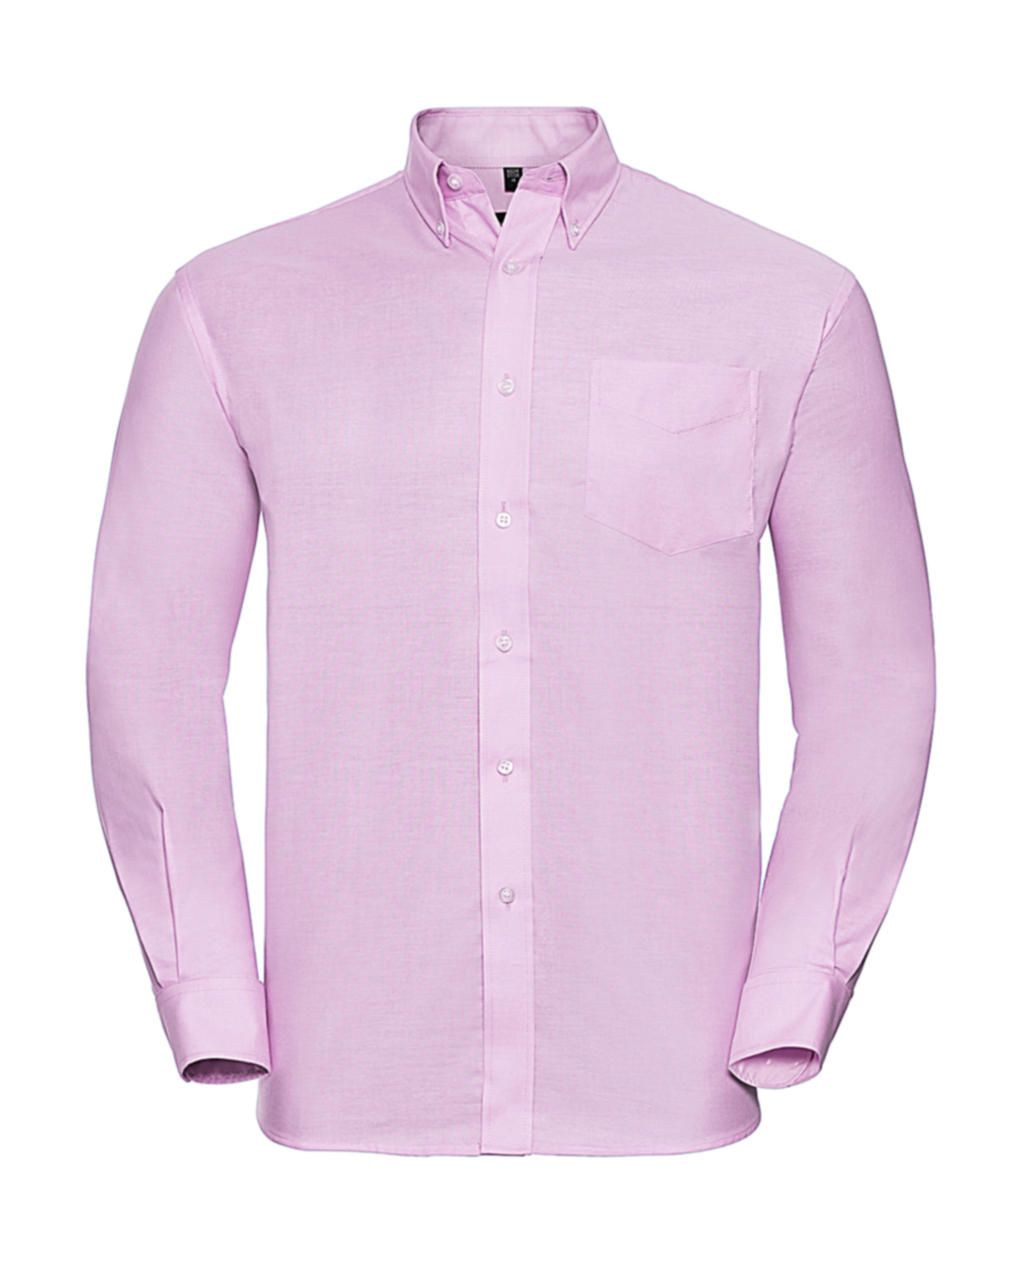 Košile Oxford s dlouhým rukávem Velikost: XL, Barva: Classic Pink